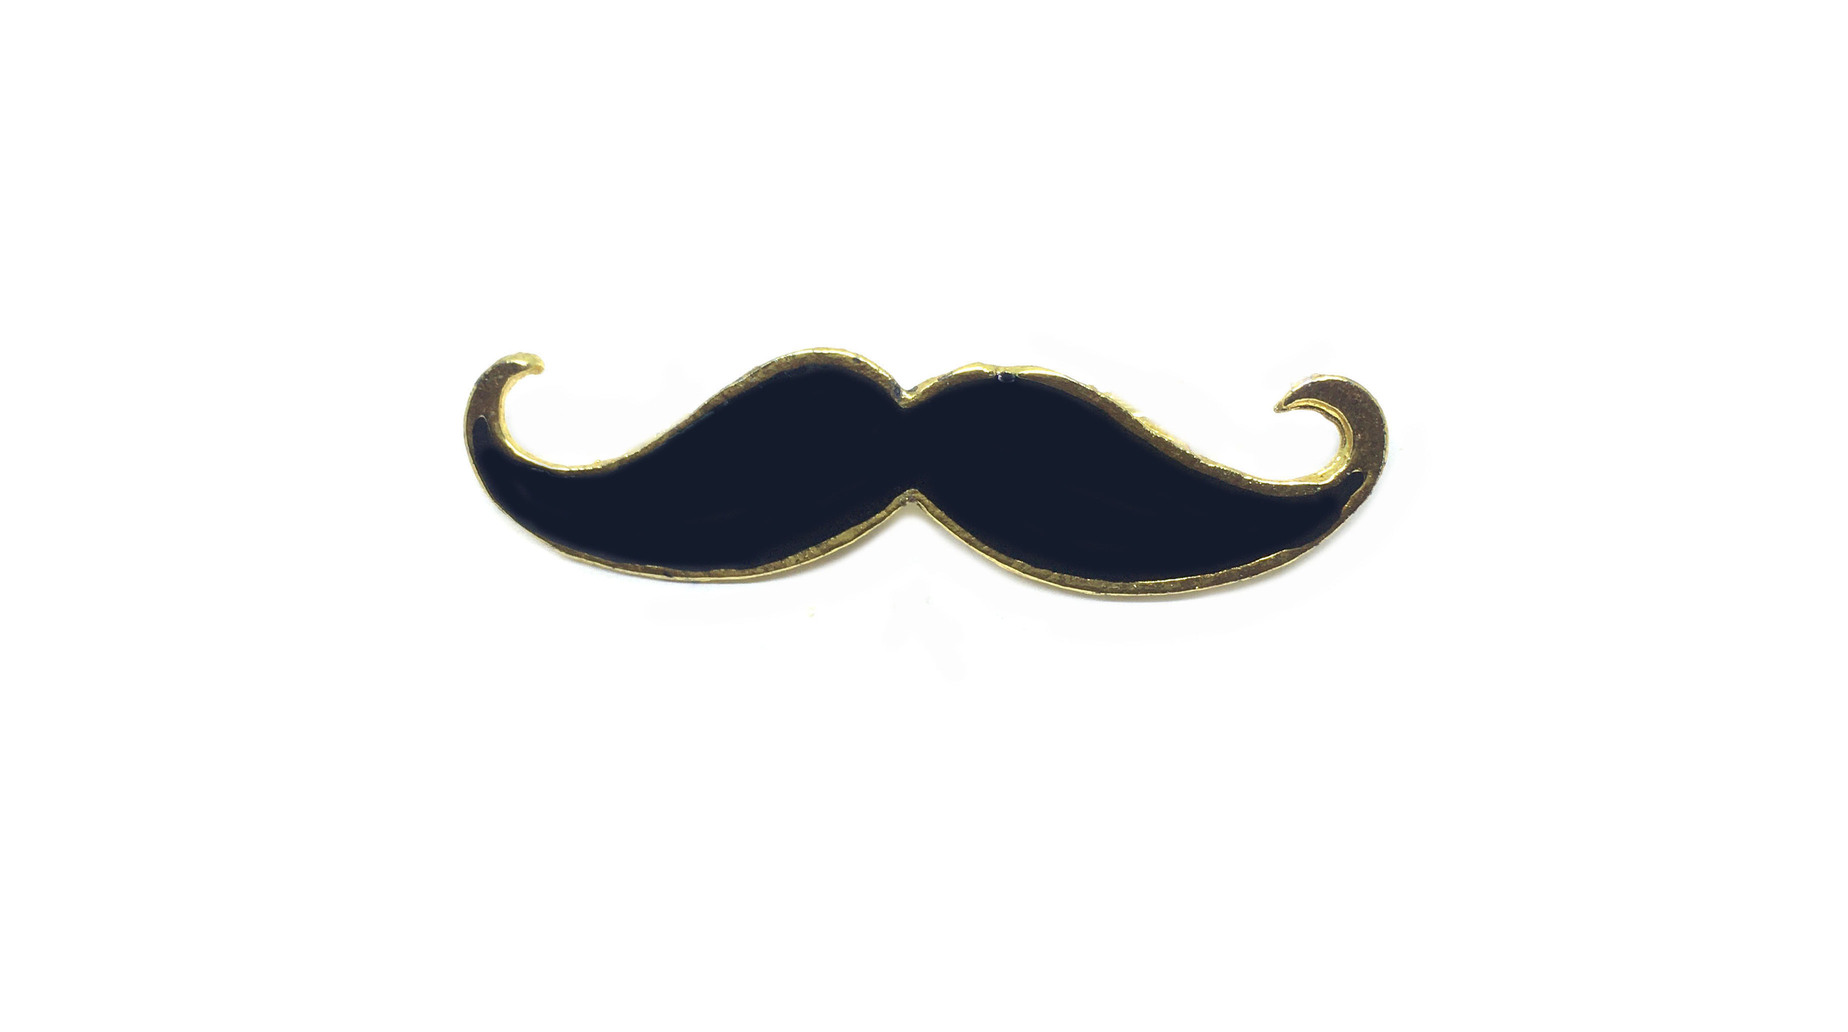 FMUS-008 Moustache Lapel Pin